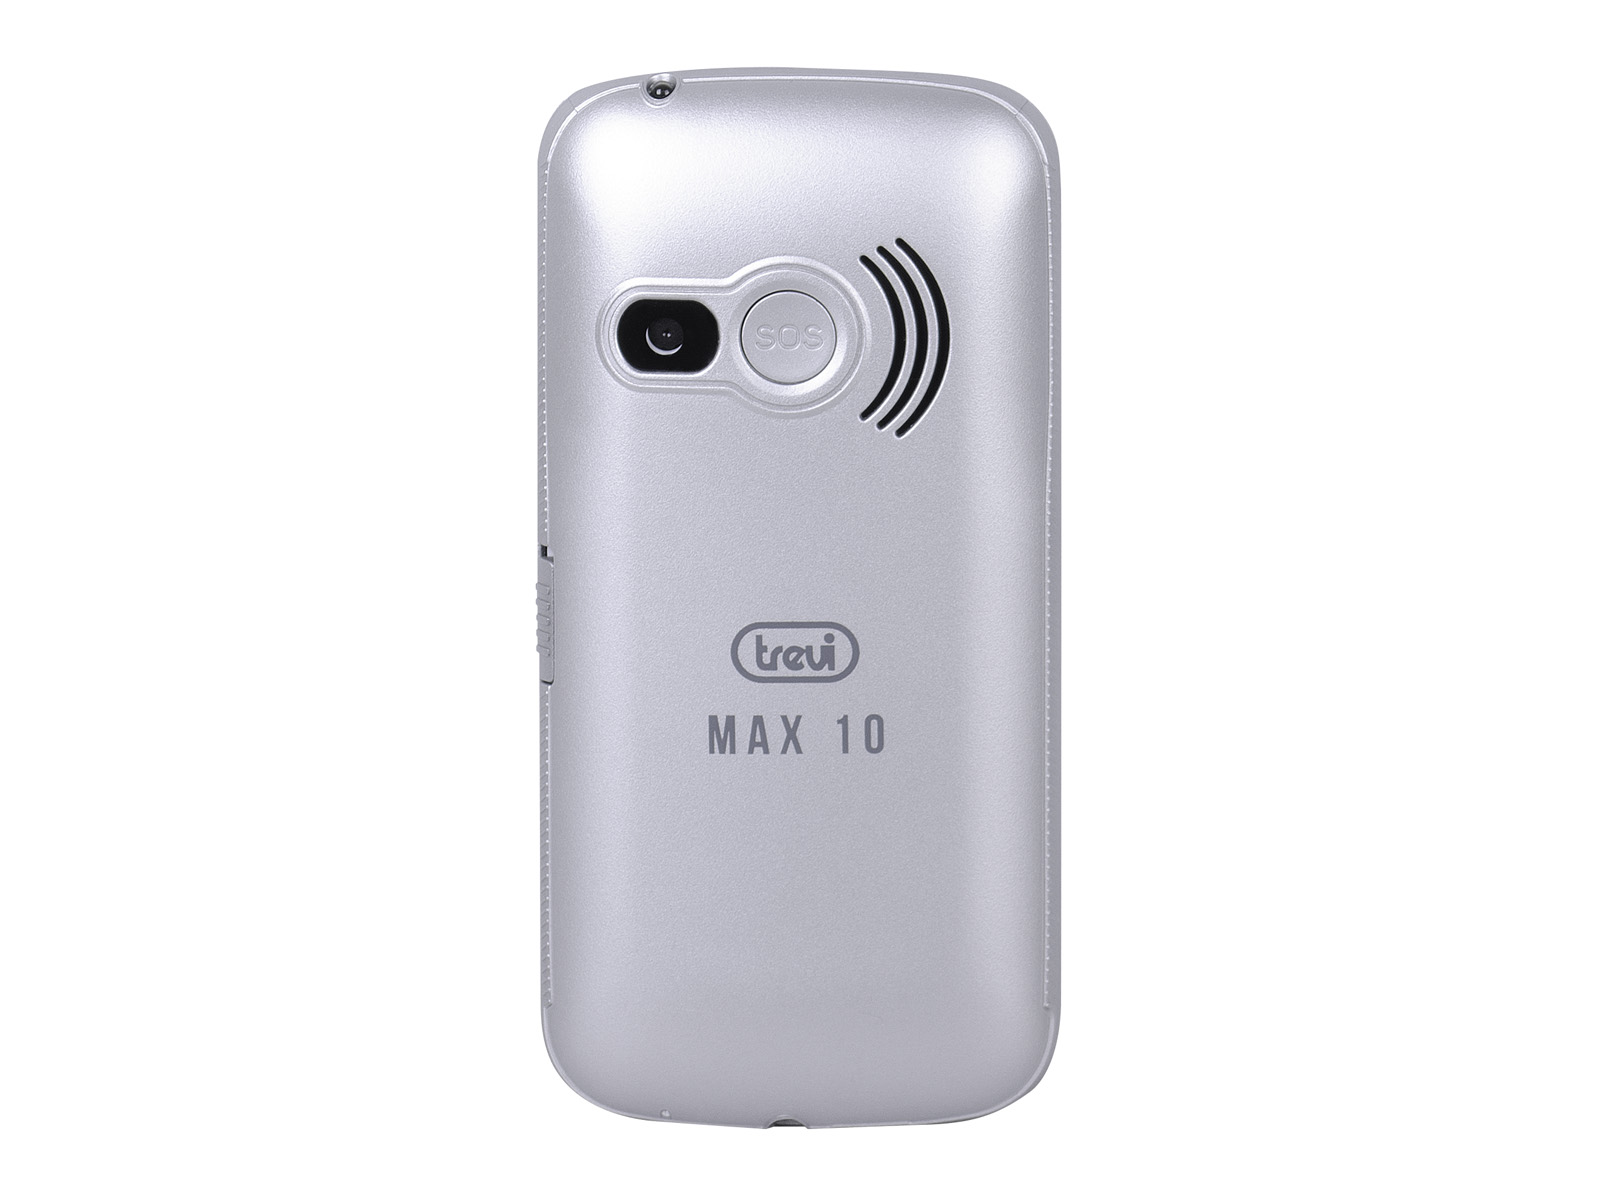 Telefono Cellulare con Grandi Tasti Funzione SOS Trevi MAX 10 Argento